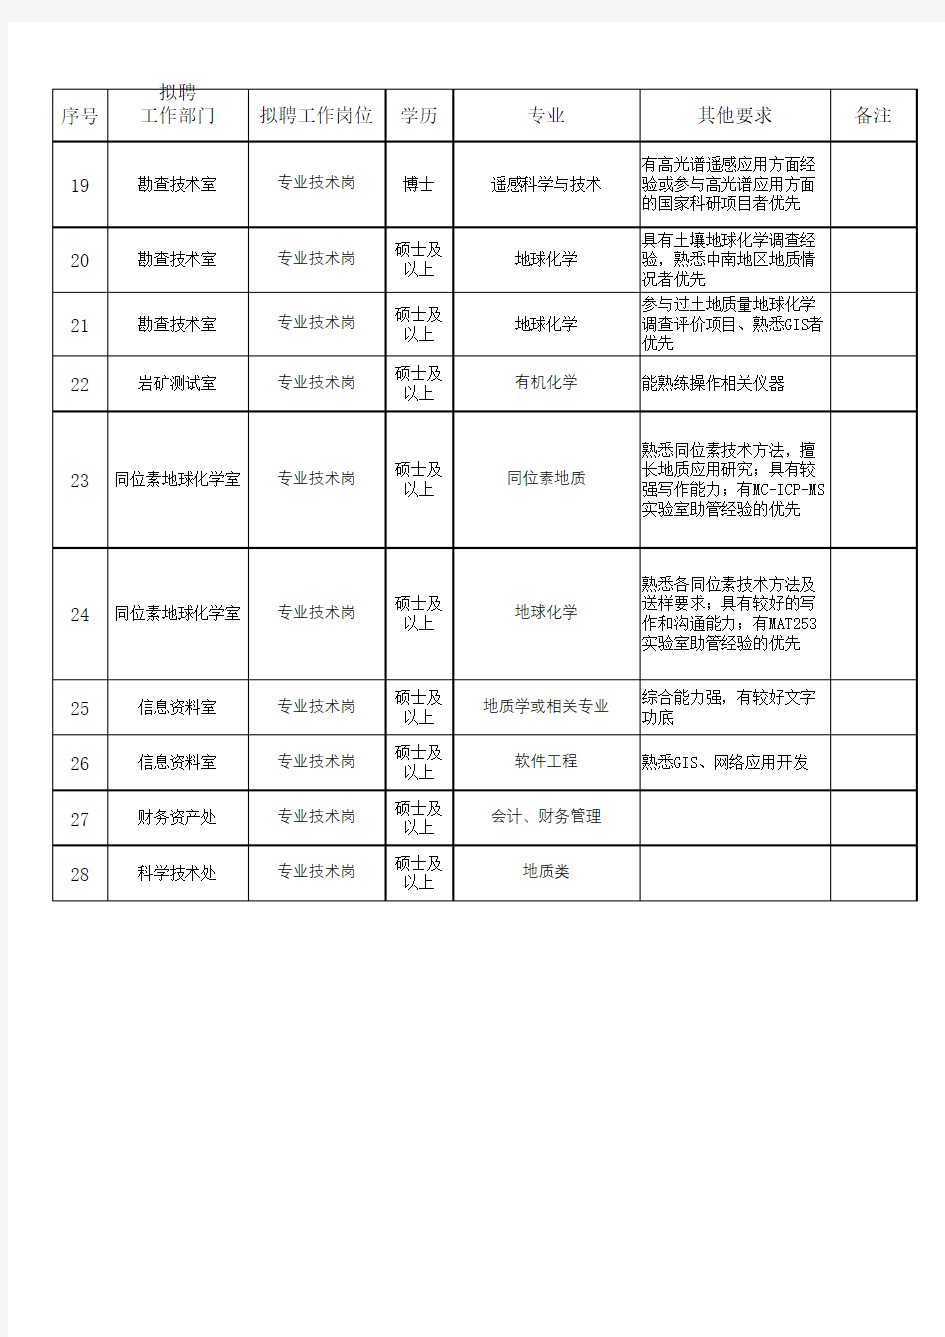 中国地质调查局武汉地质调查中心2018年新进人员计划表(应届毕业生)